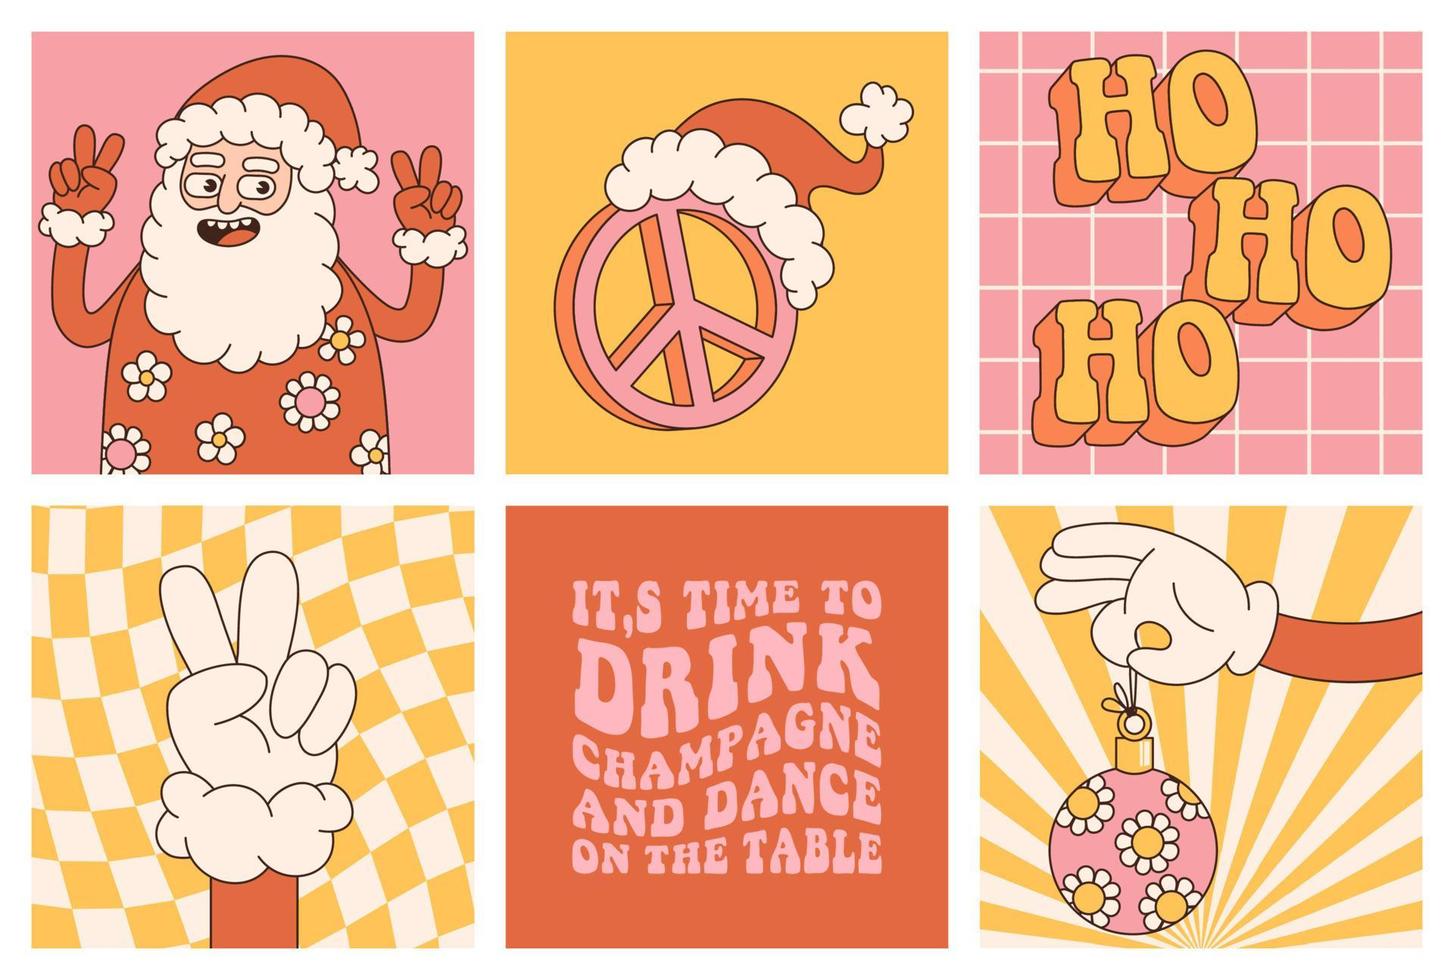 Groovy hippie Natale adesivi. Santa claus, pace, Ho ho ho nel di moda retrò cartone animato stile. vettore